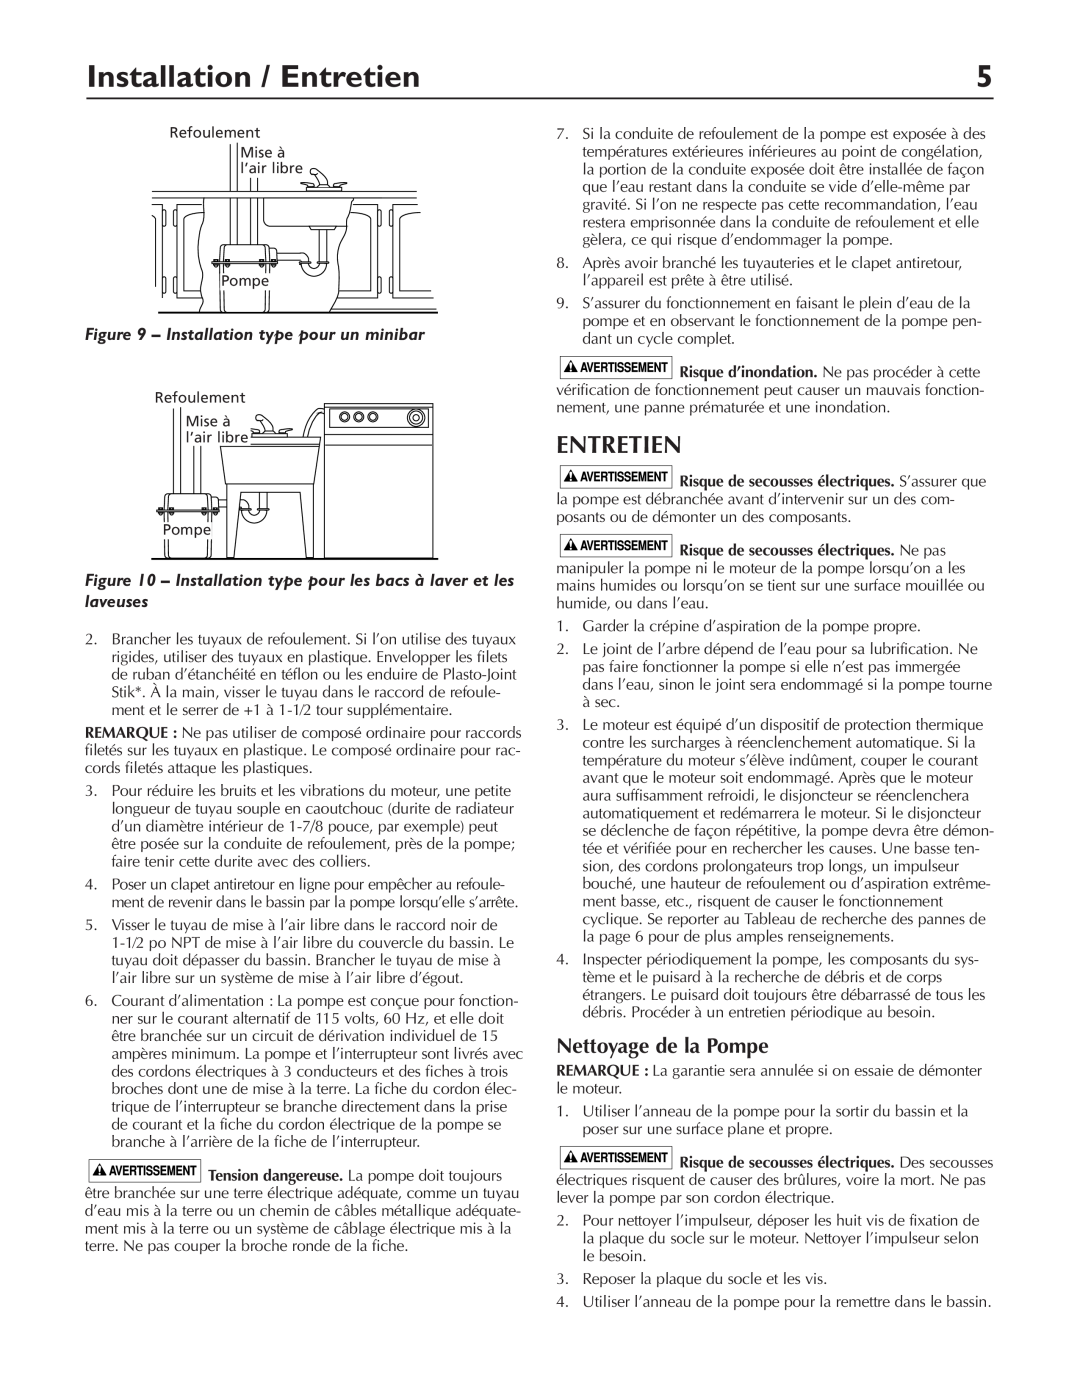 Pentair DP233110V owner manual Installation / Entretien, Nettoyage de la Pompe, Installation type pour un minibar 